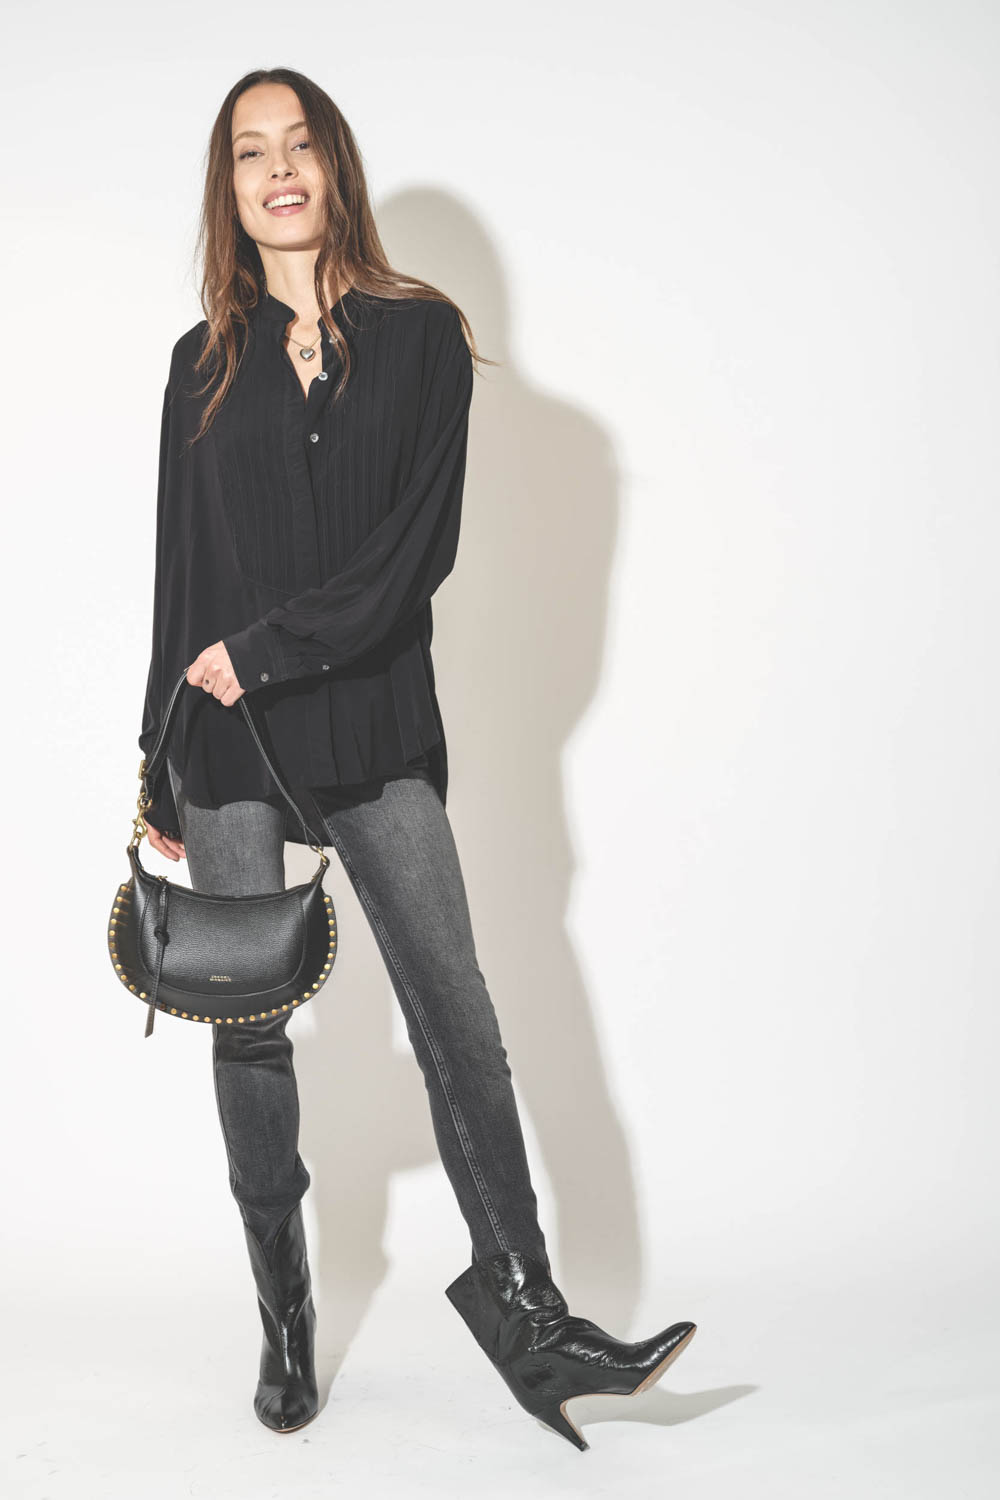 Chemise forme liquette manches longues en viscose noir Amel Isabel Marant Etoile. Porté avec un sac Isabel Marant en cuir noir.